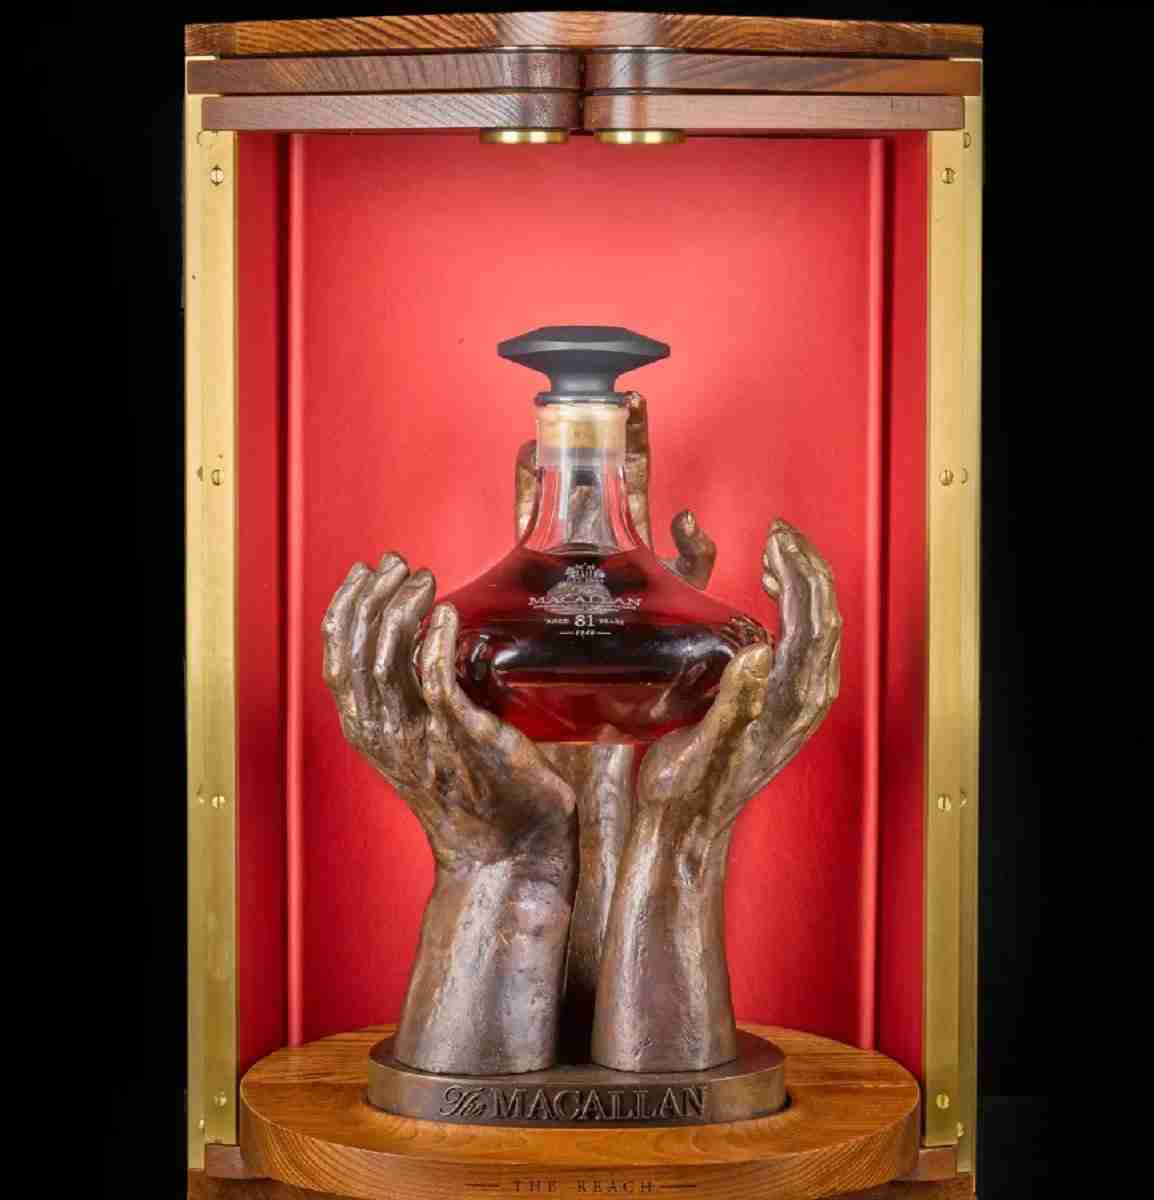 Whisky mais antigo do mundo vai a leilão. Fotos: Divulgação/ Sotheby’s